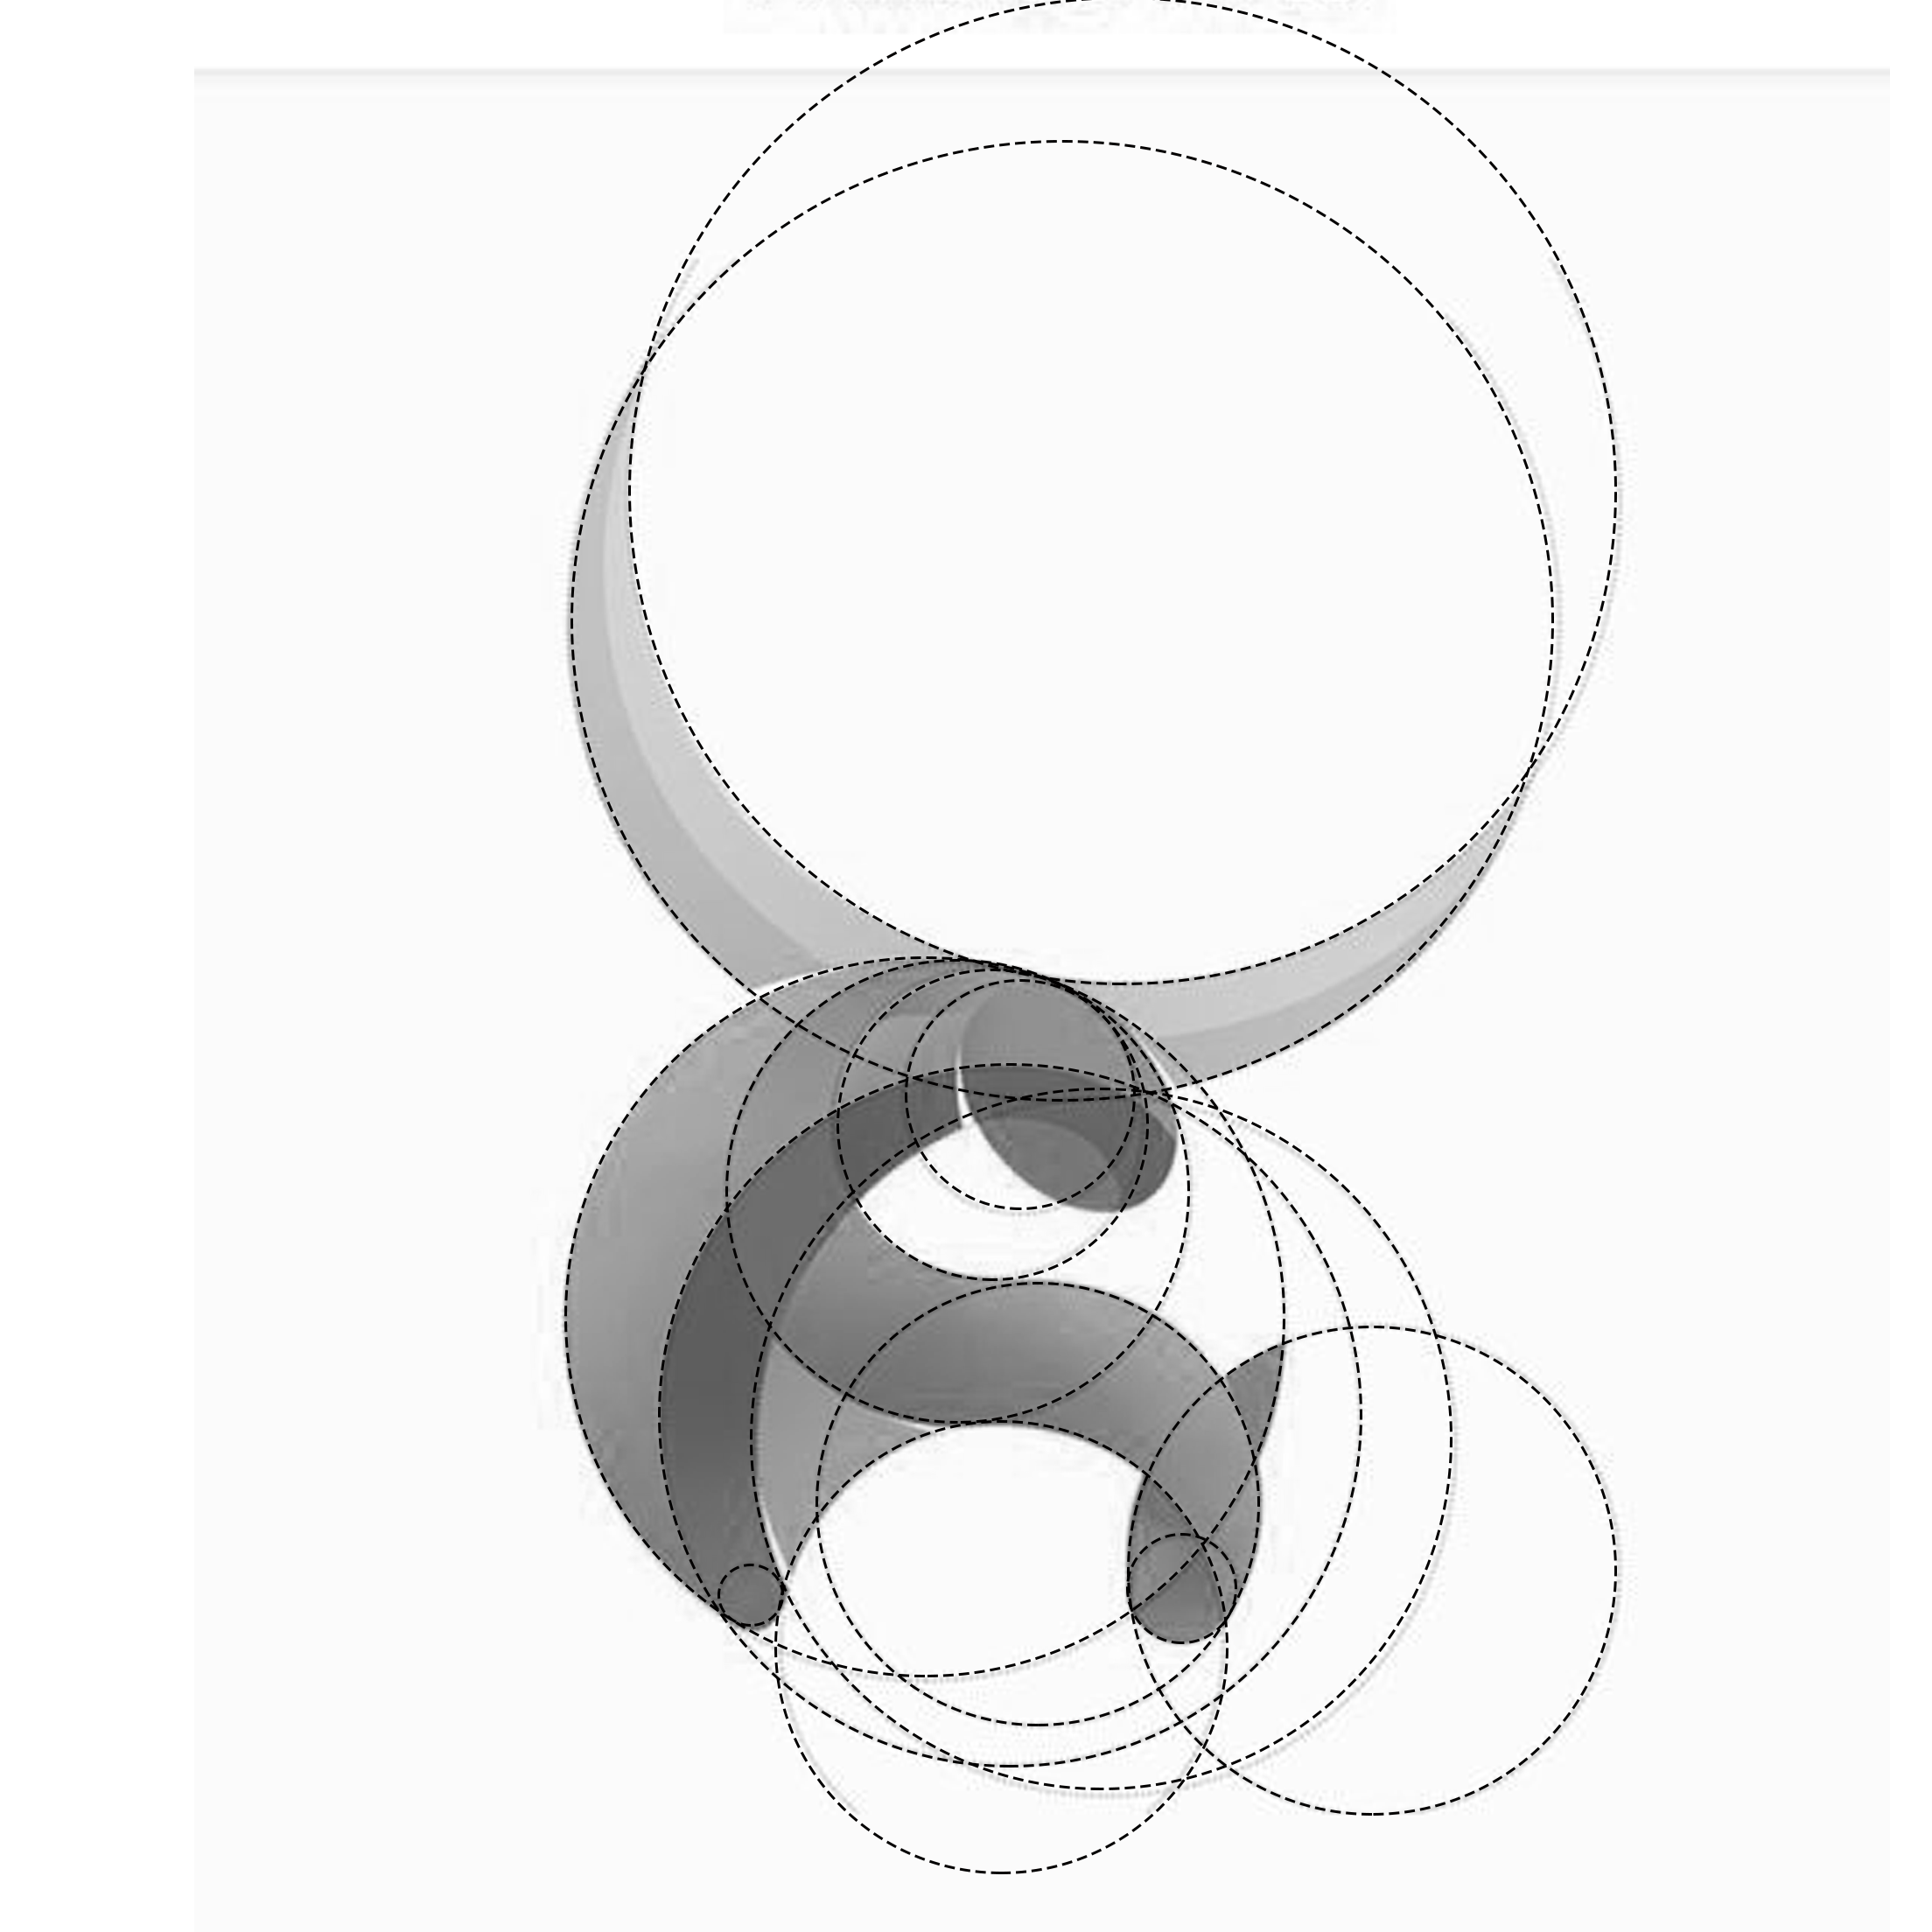 在圆上选取n个点，两两连线，最多可以在圆内形成多少个交点？ - 知乎